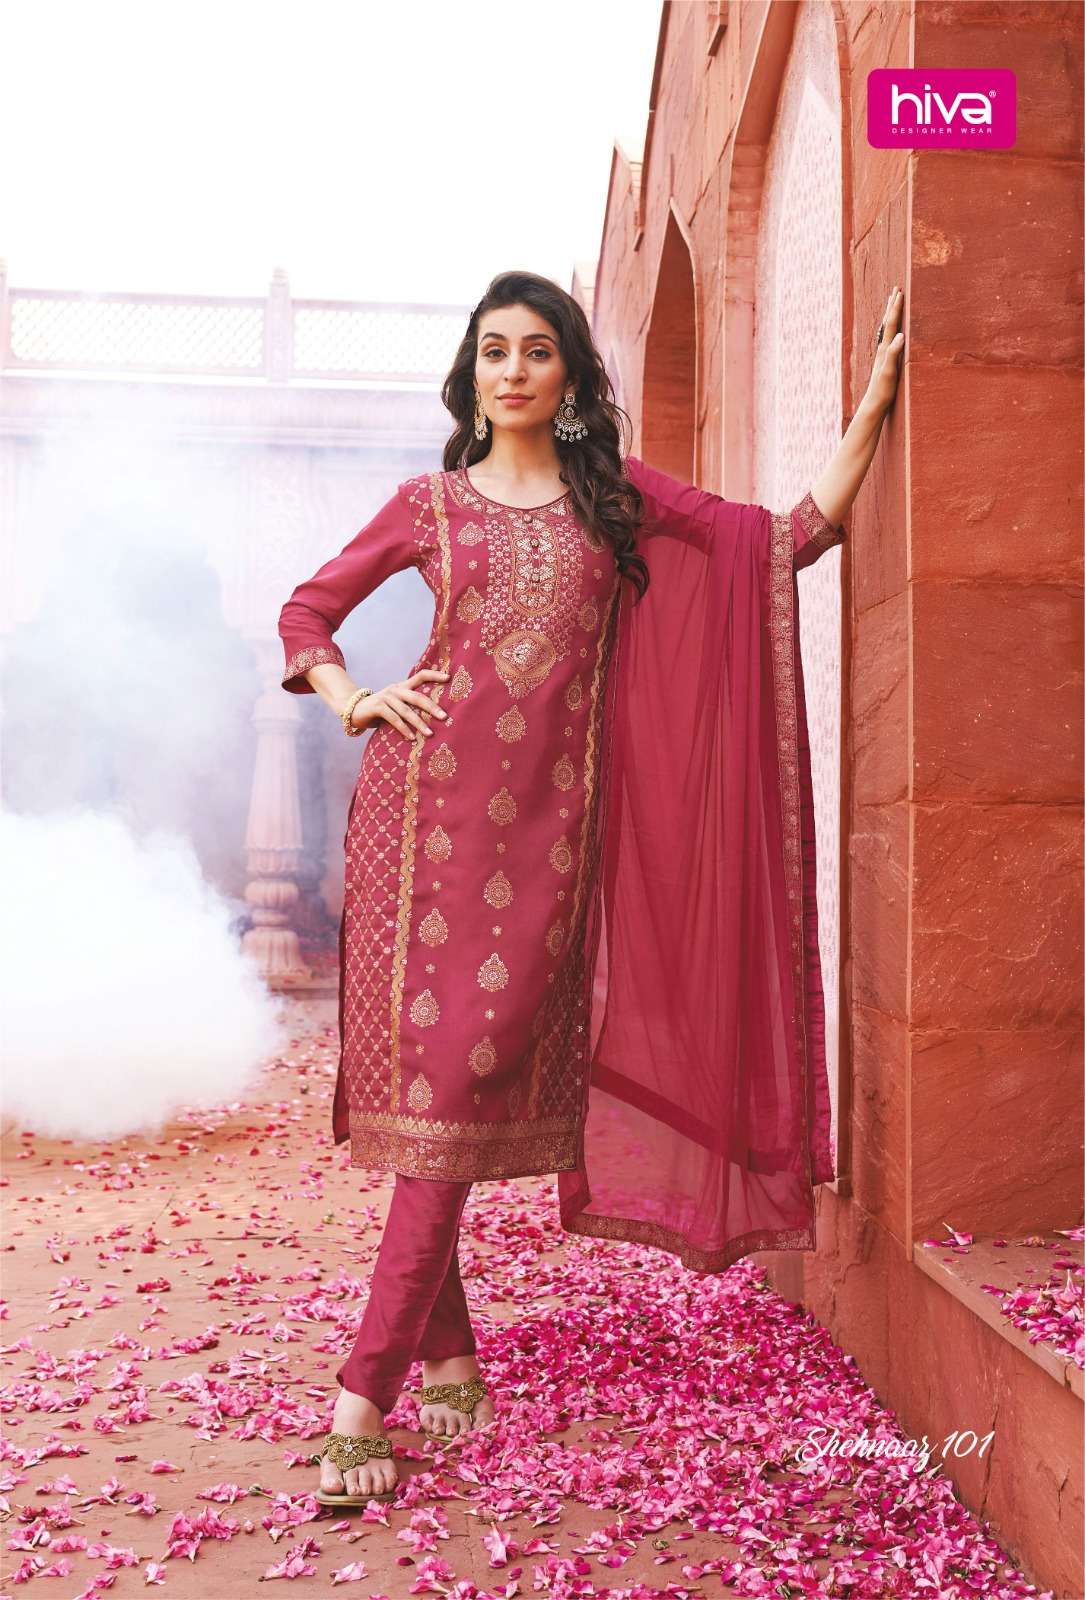 Shehnaaz Buy Hiva Online Wholesaler Latest Collection Kurta Suit Set